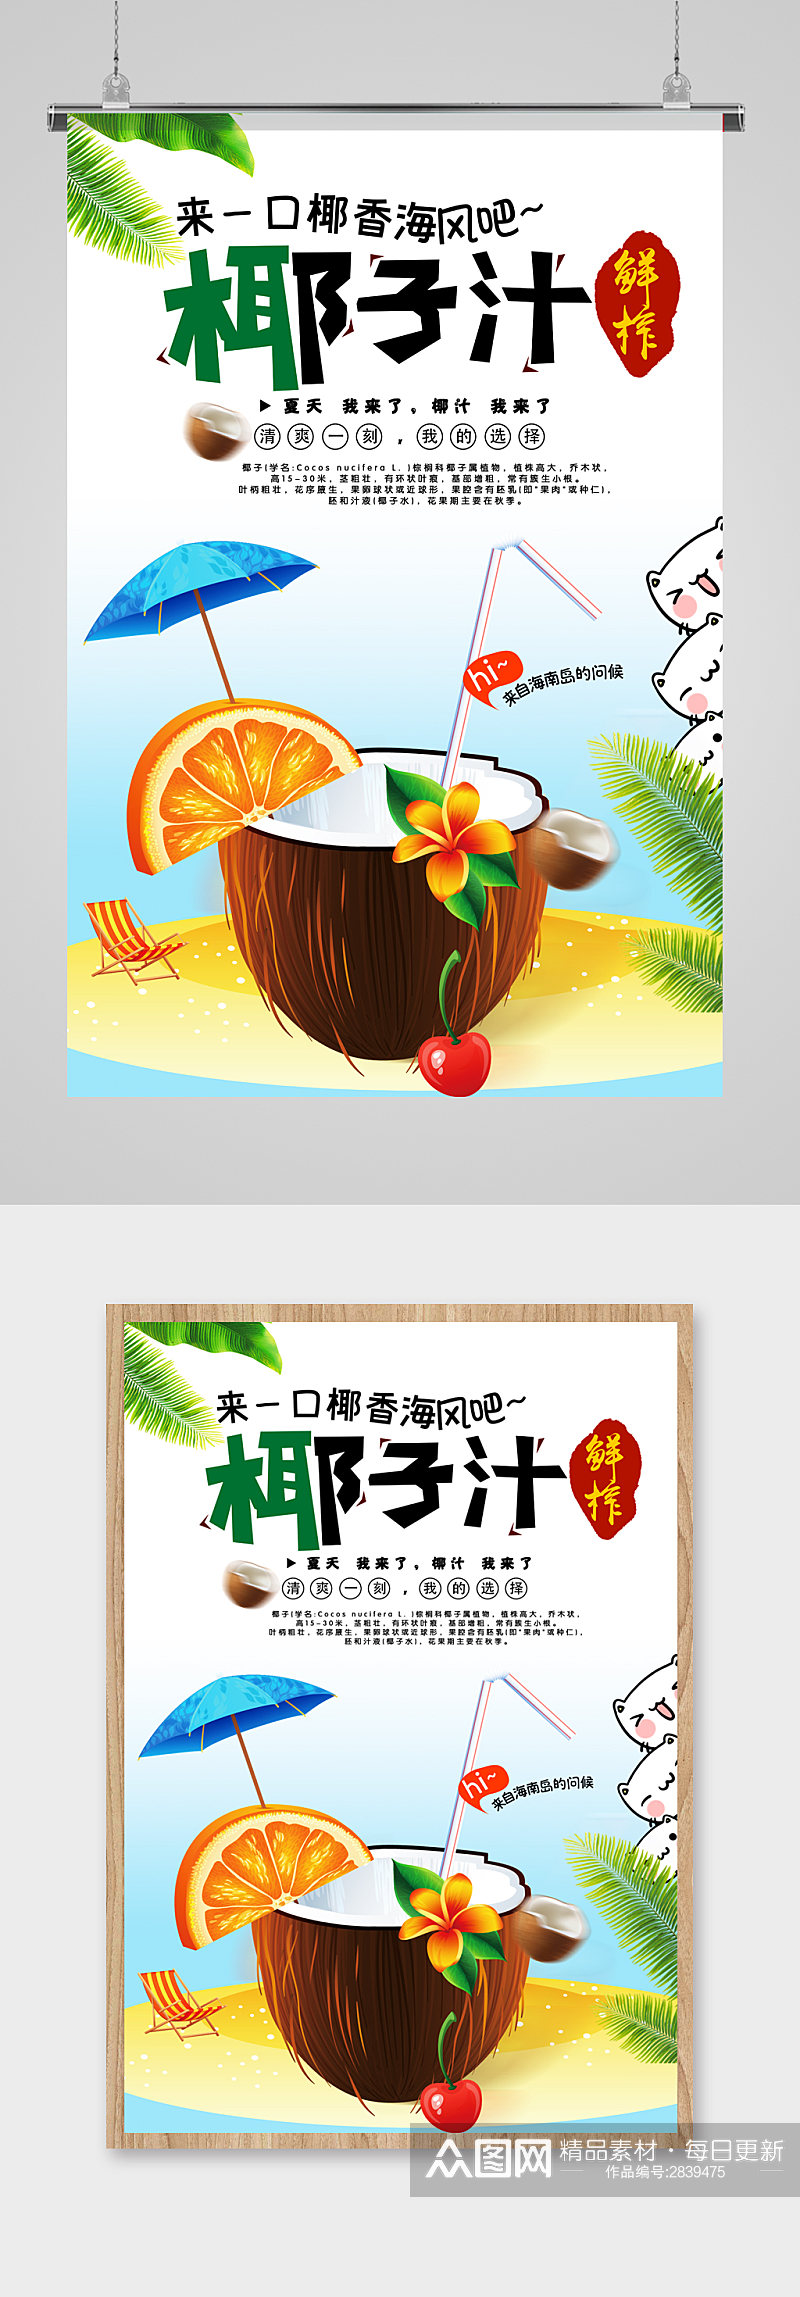 椰子汁促销海报设计素材